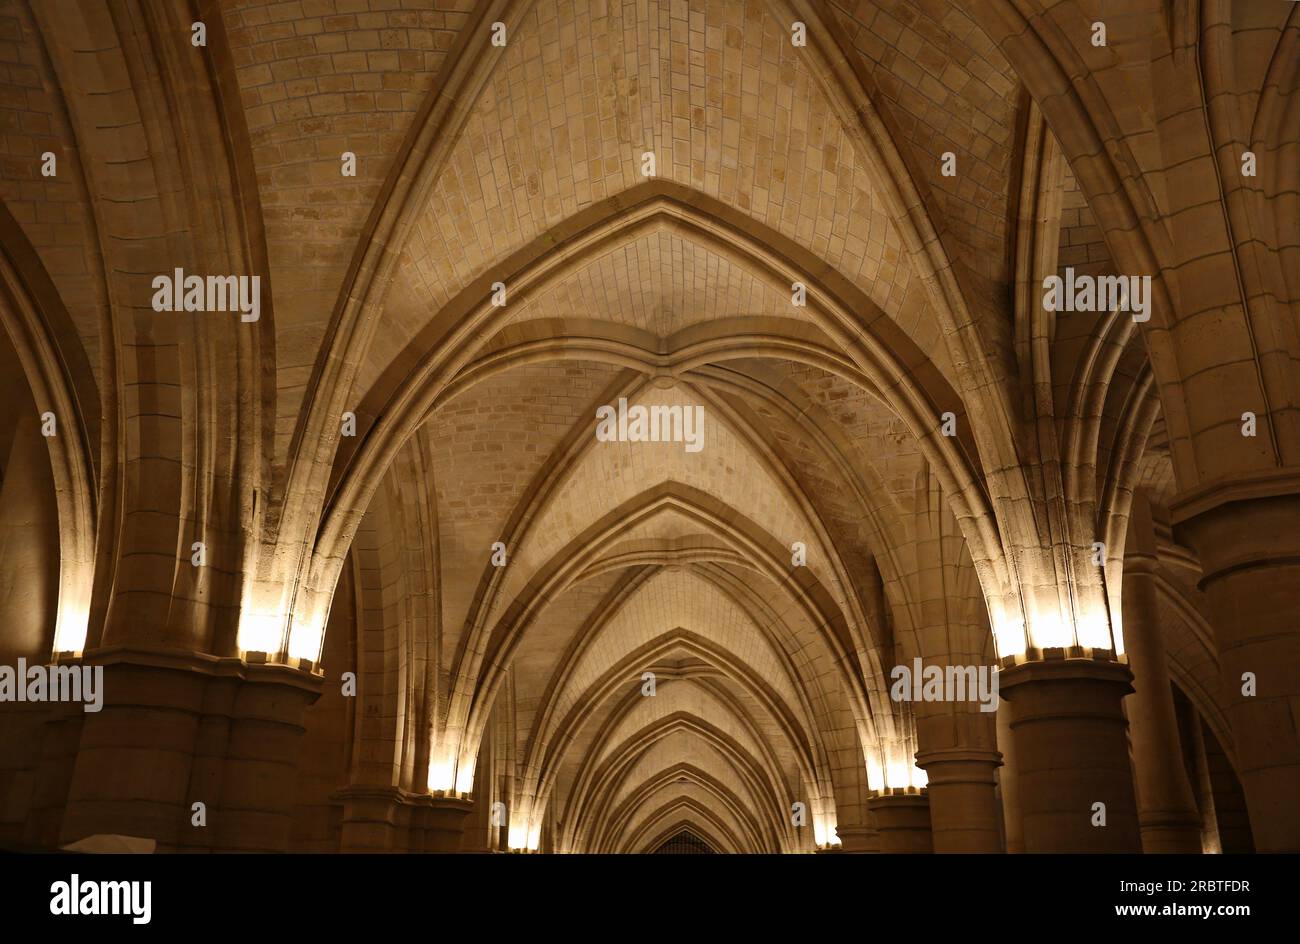 The row of arches - La Conciergerie interior, Paris, France Stock Photo